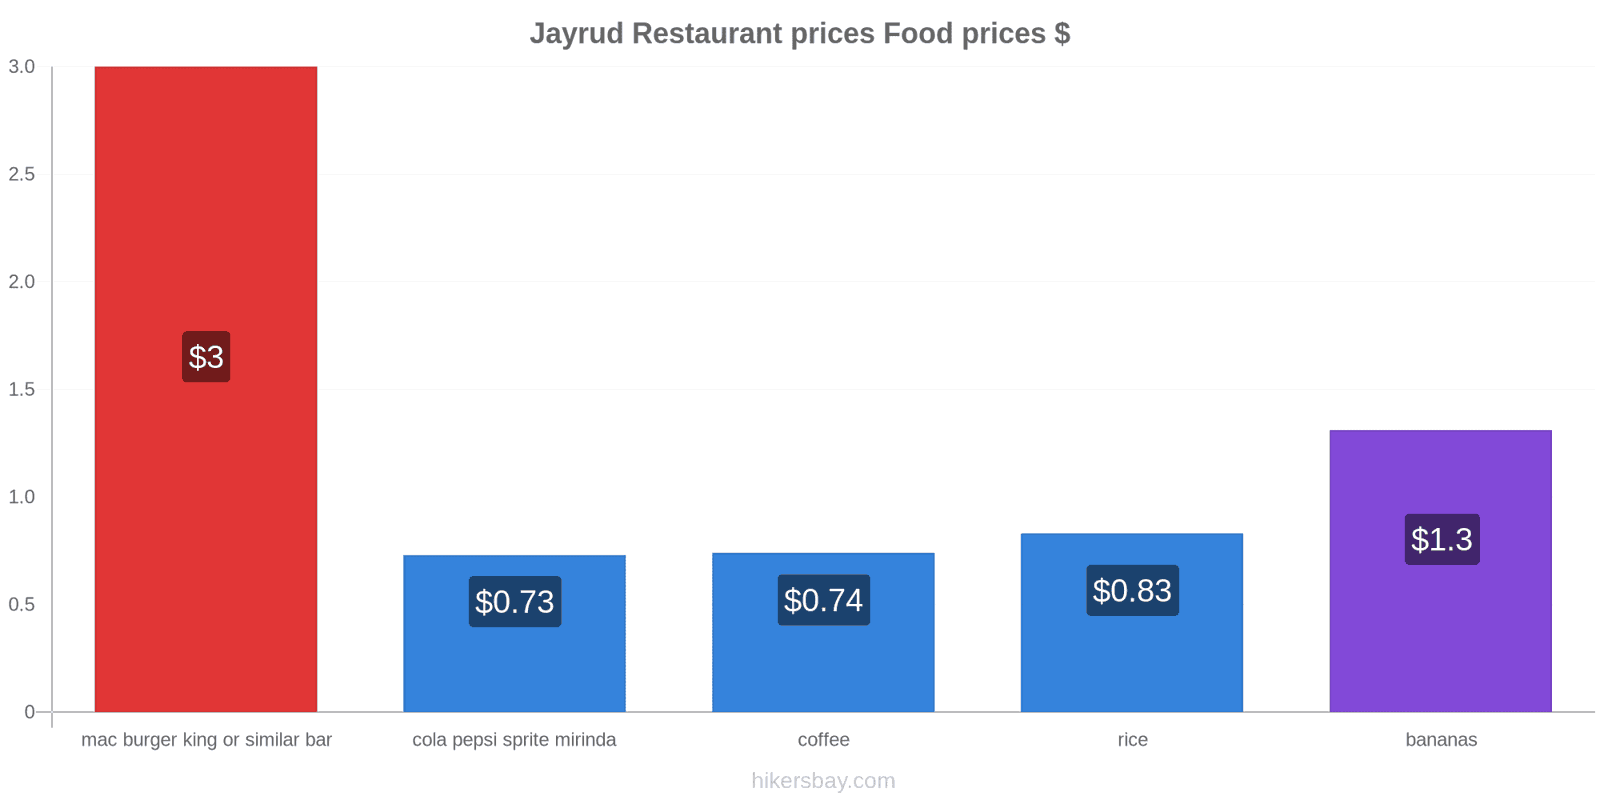 Jayrud price changes hikersbay.com